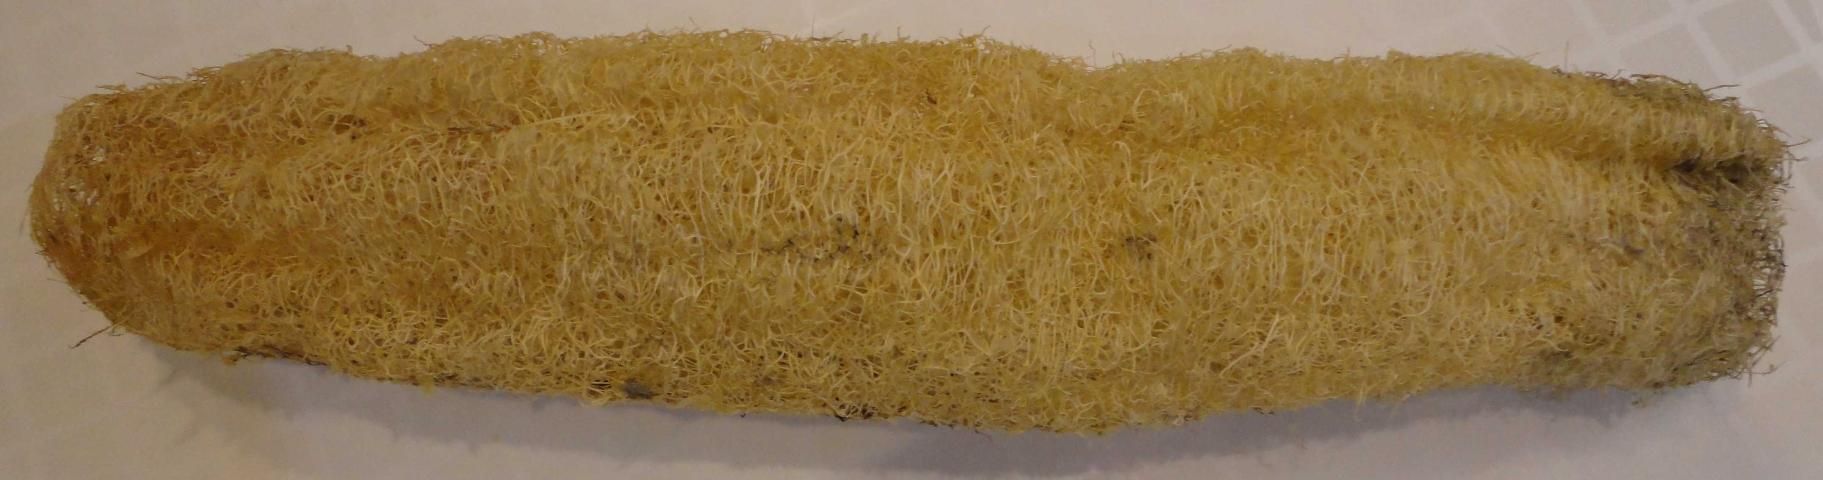 Figure 13. Luffa sponge.